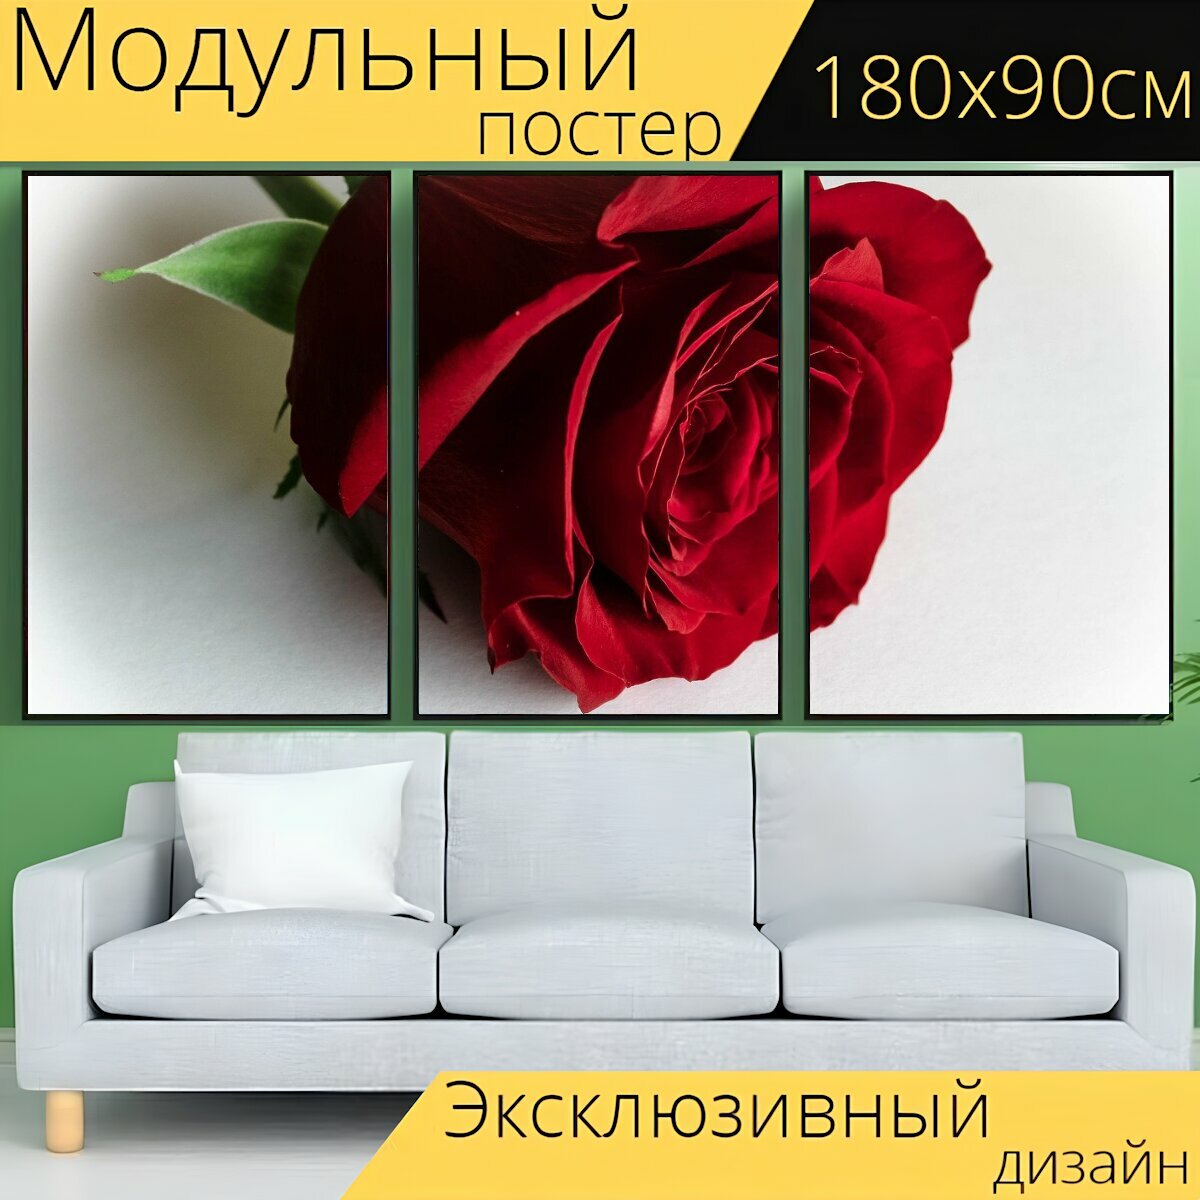 Модульный постер "Роза, красная роза, розы" 180 x 90 см. для интерьера